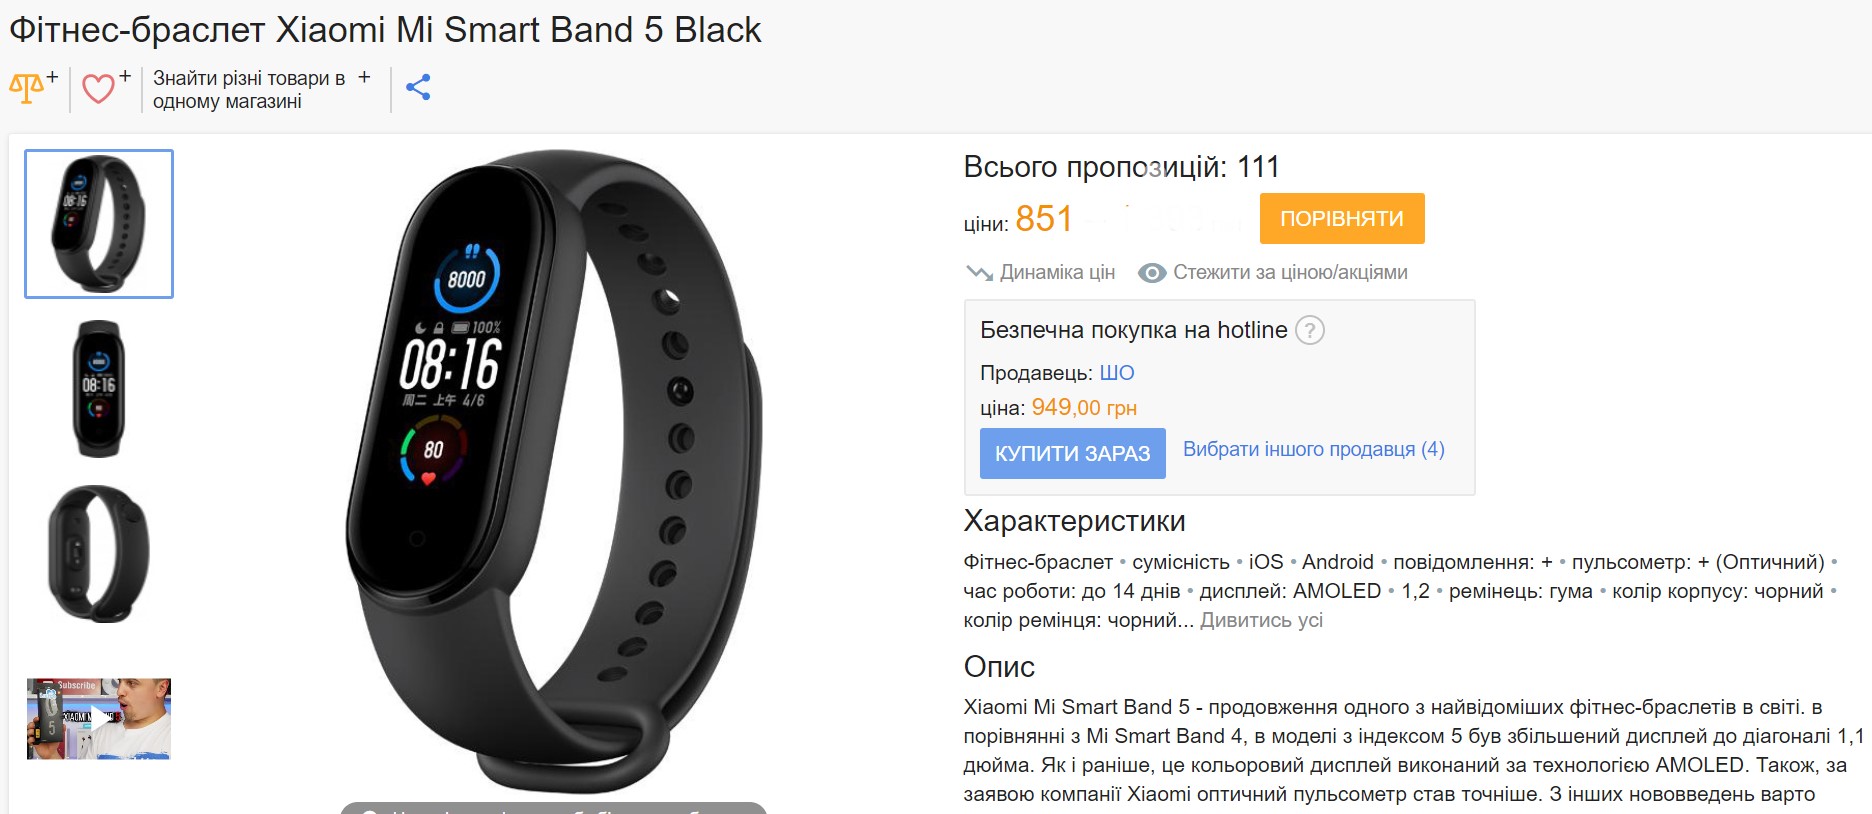 Цена на Xiaomi Mi Band 5 в Украине рухнула до рекордного минимума